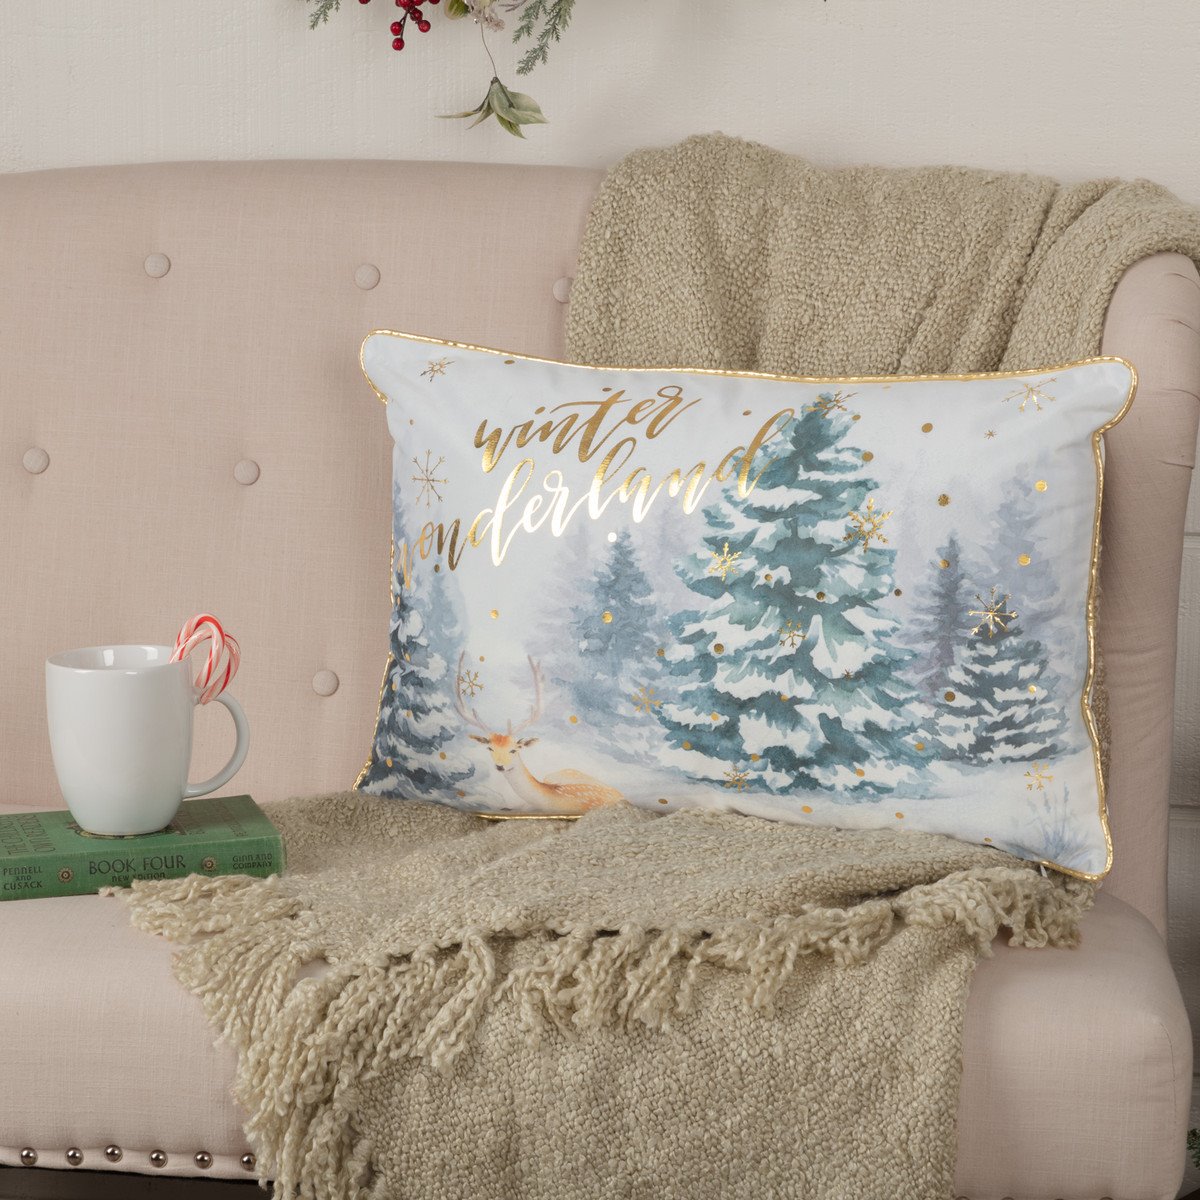 Winter Wonderland Pillow 14x22